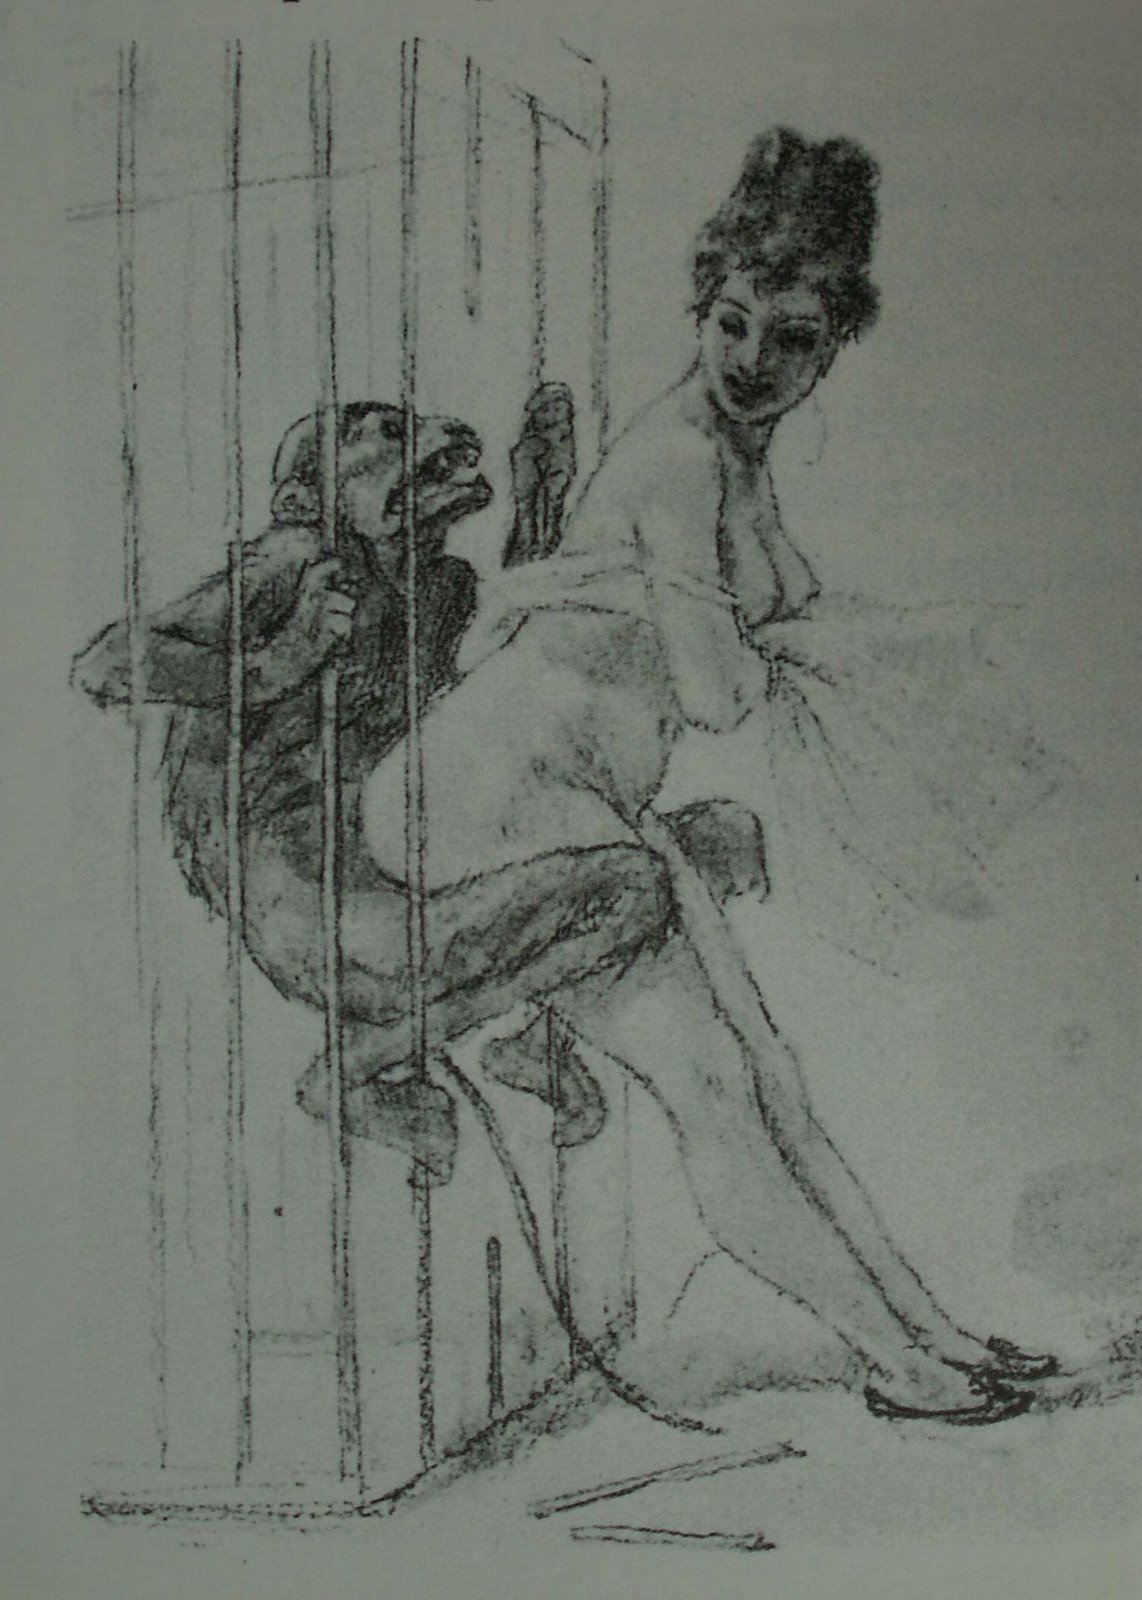 секс женщины с обезьяной через прутья клетки, эротическая гравюра